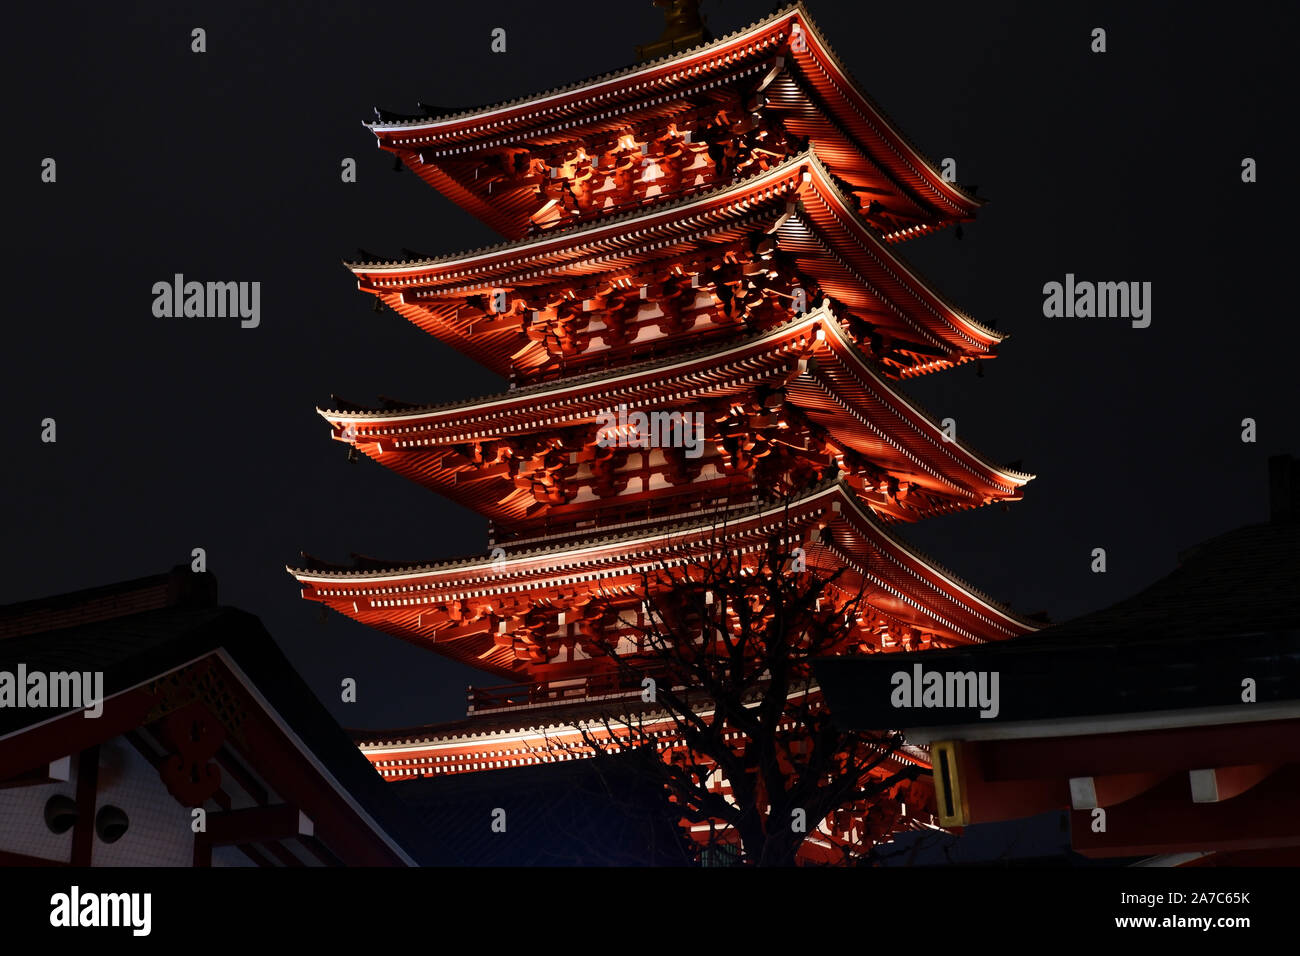 L'ancien bâtiment historique Temple japonais zen au Japon city at night Banque D'Images